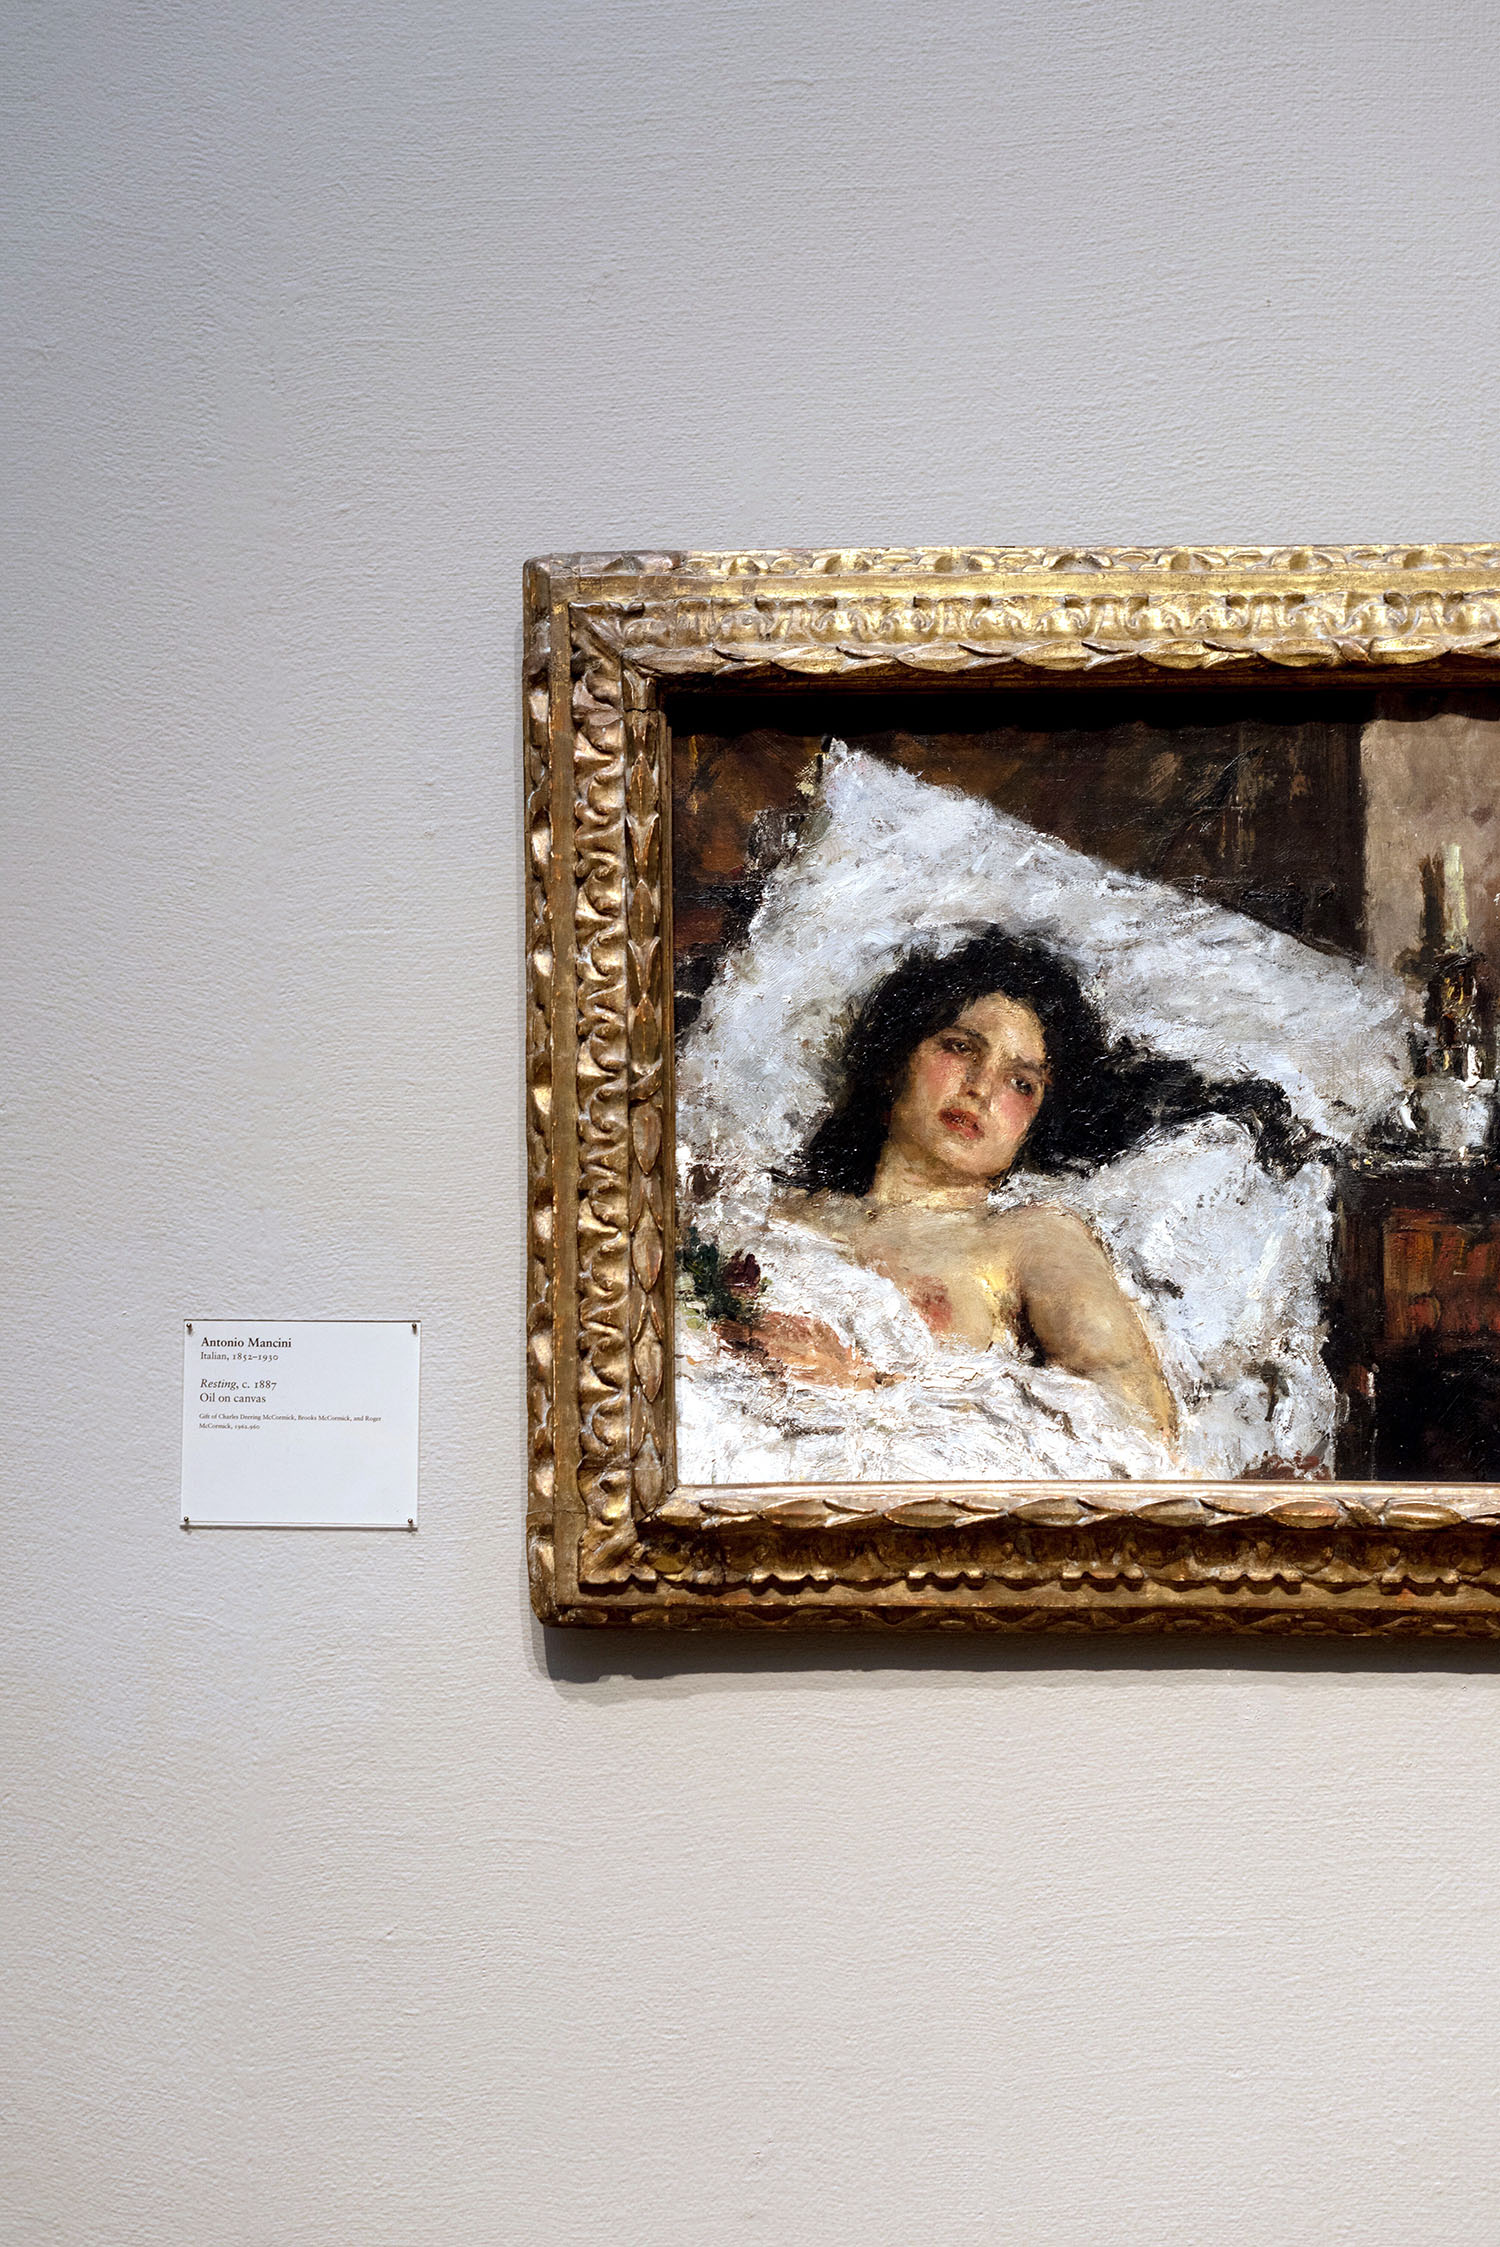 Coco & Vera - Resting by Antonio Mancini, Art Institute of Chicago